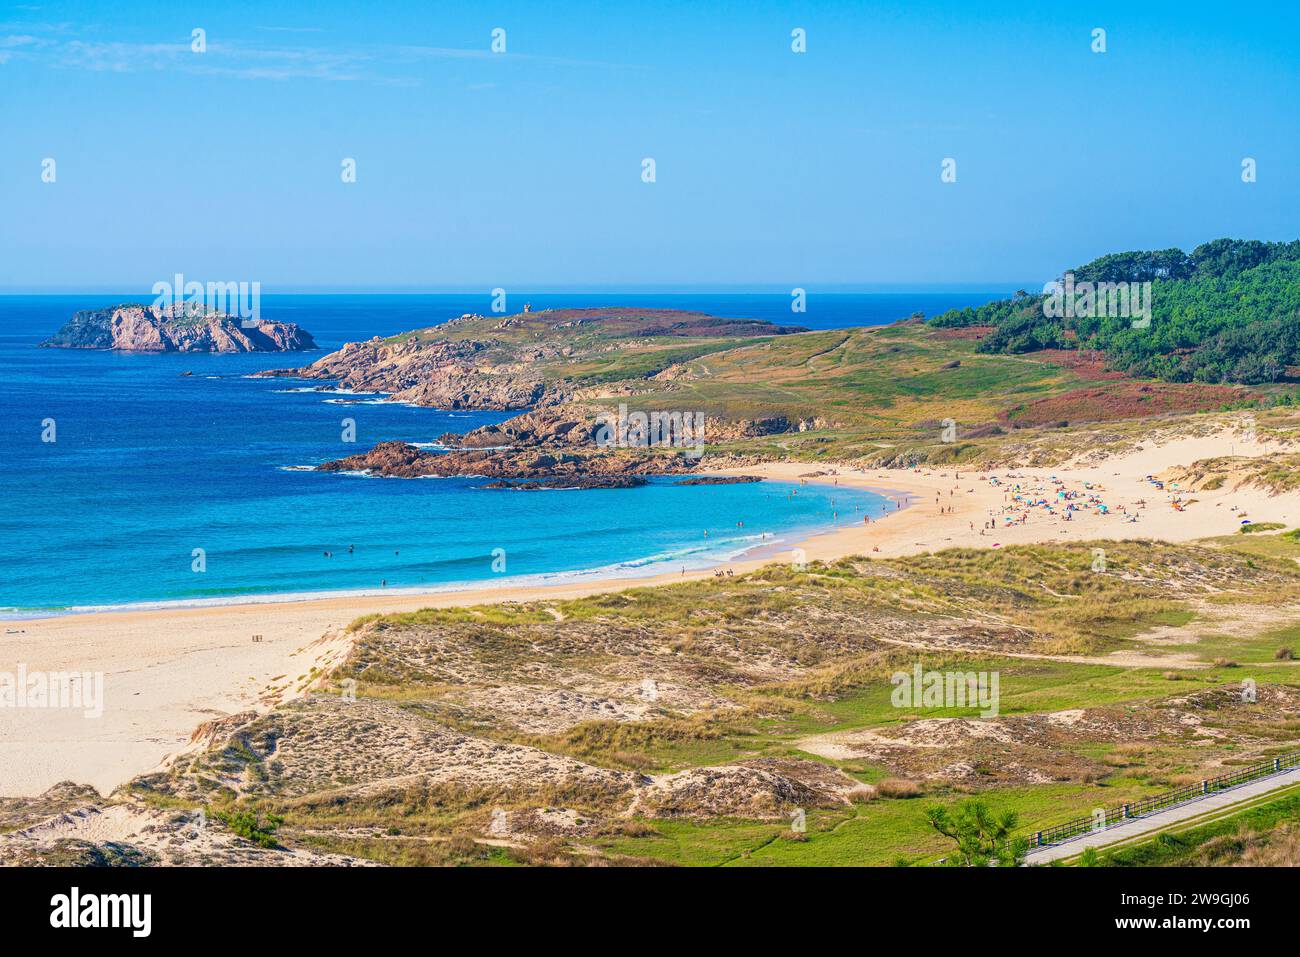 Vista panorámica de la playa de Doninos en la costa del Océano Atlántico, Ferrol, Galicia, España Foto de stock